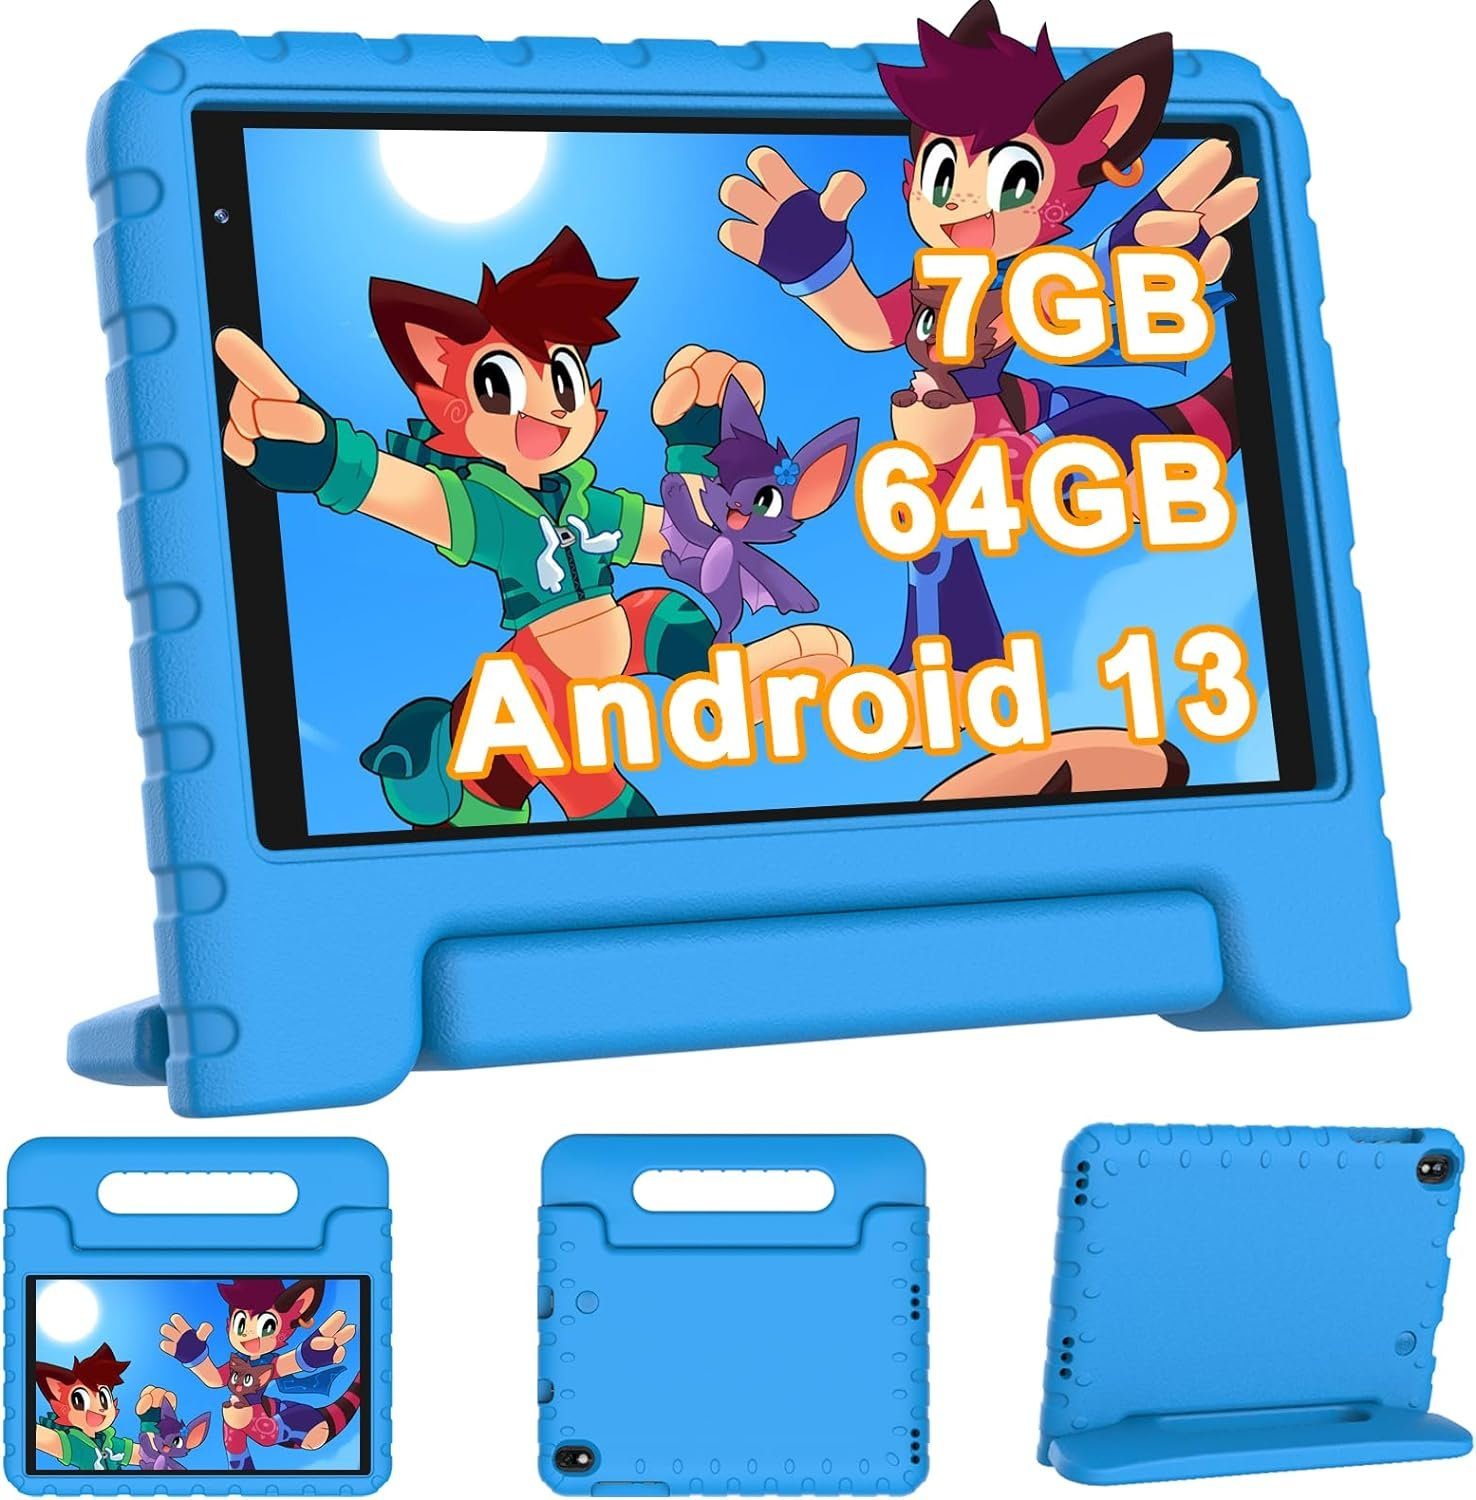 YESTEL Kinder Tablet mit 7GB RAM Erweiterung 1TB Tablet (8, 64 GB, Android  13, mit Erweiterung 1TB Doppelkamera, GPS, Tablet mit Kindersicherer Hülle)